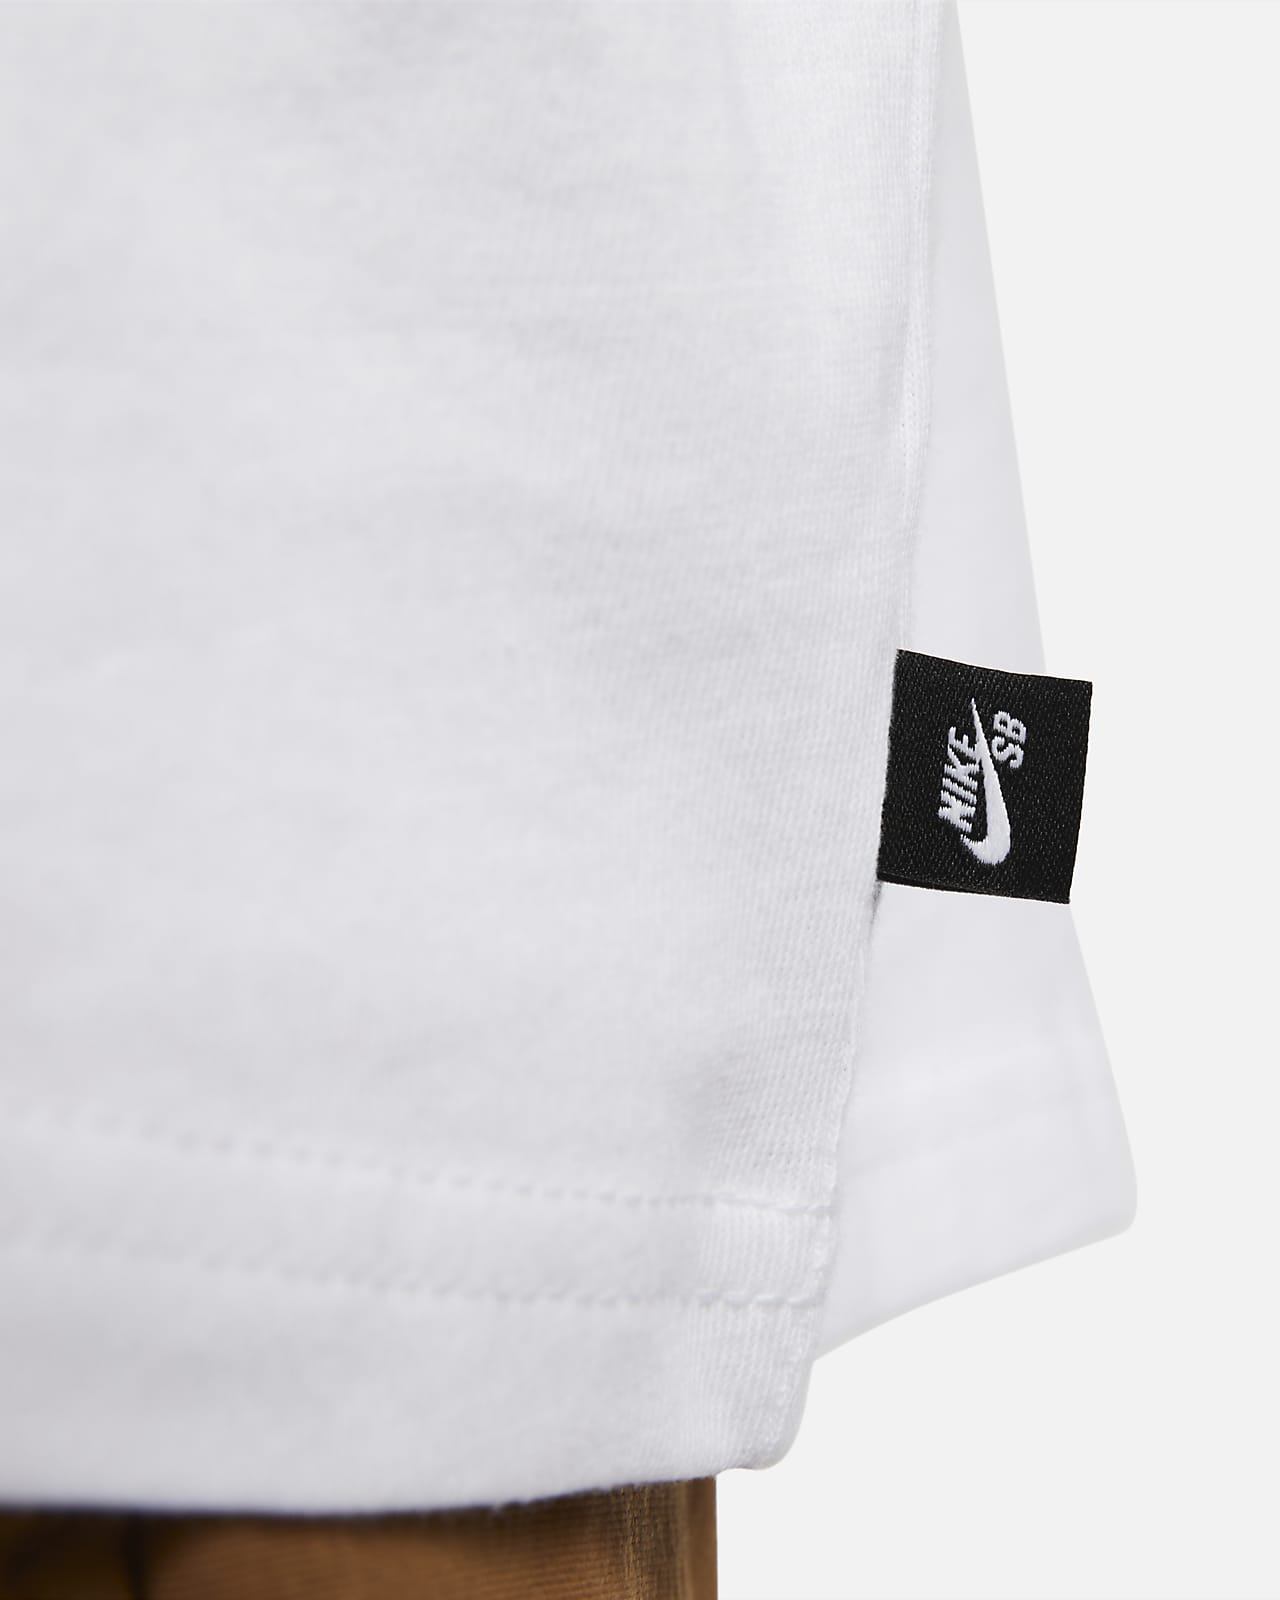 Nike SB Long-Sleeve Skate T-Shirt